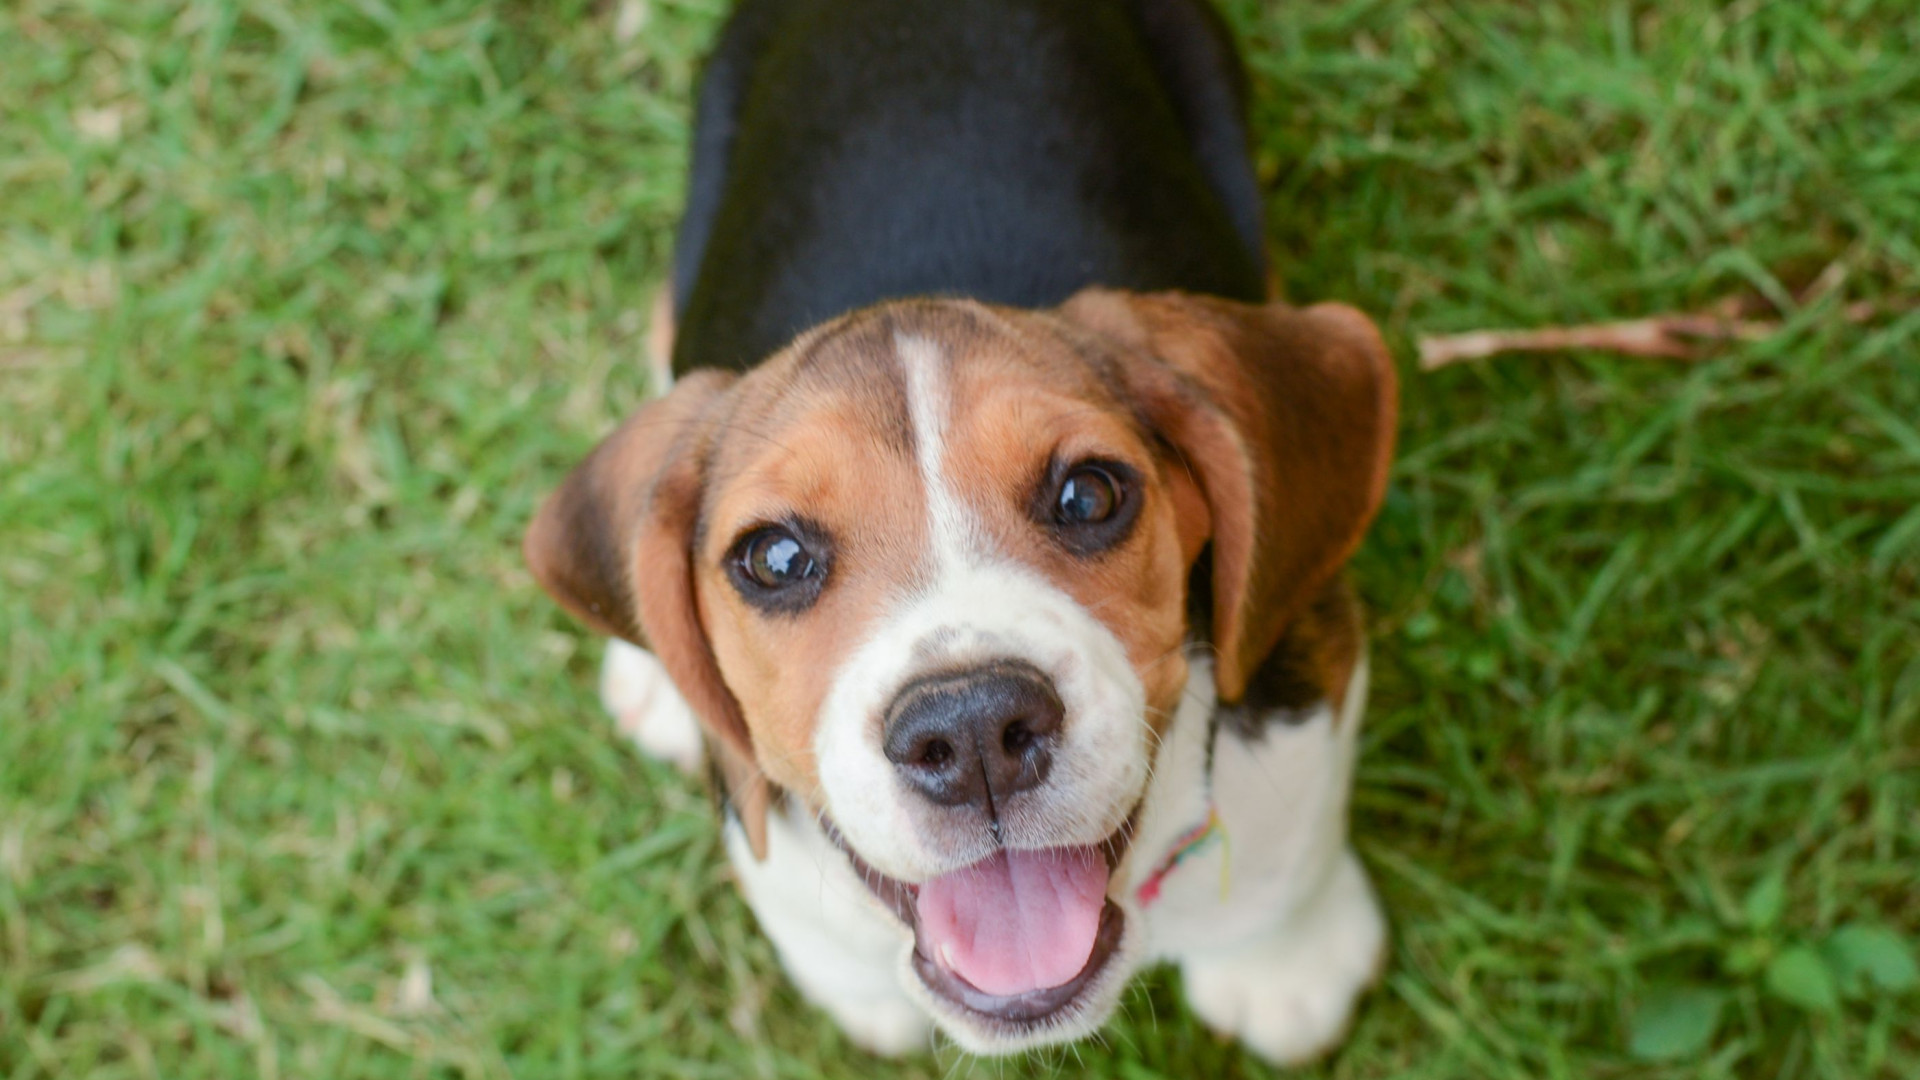 A beagle dog